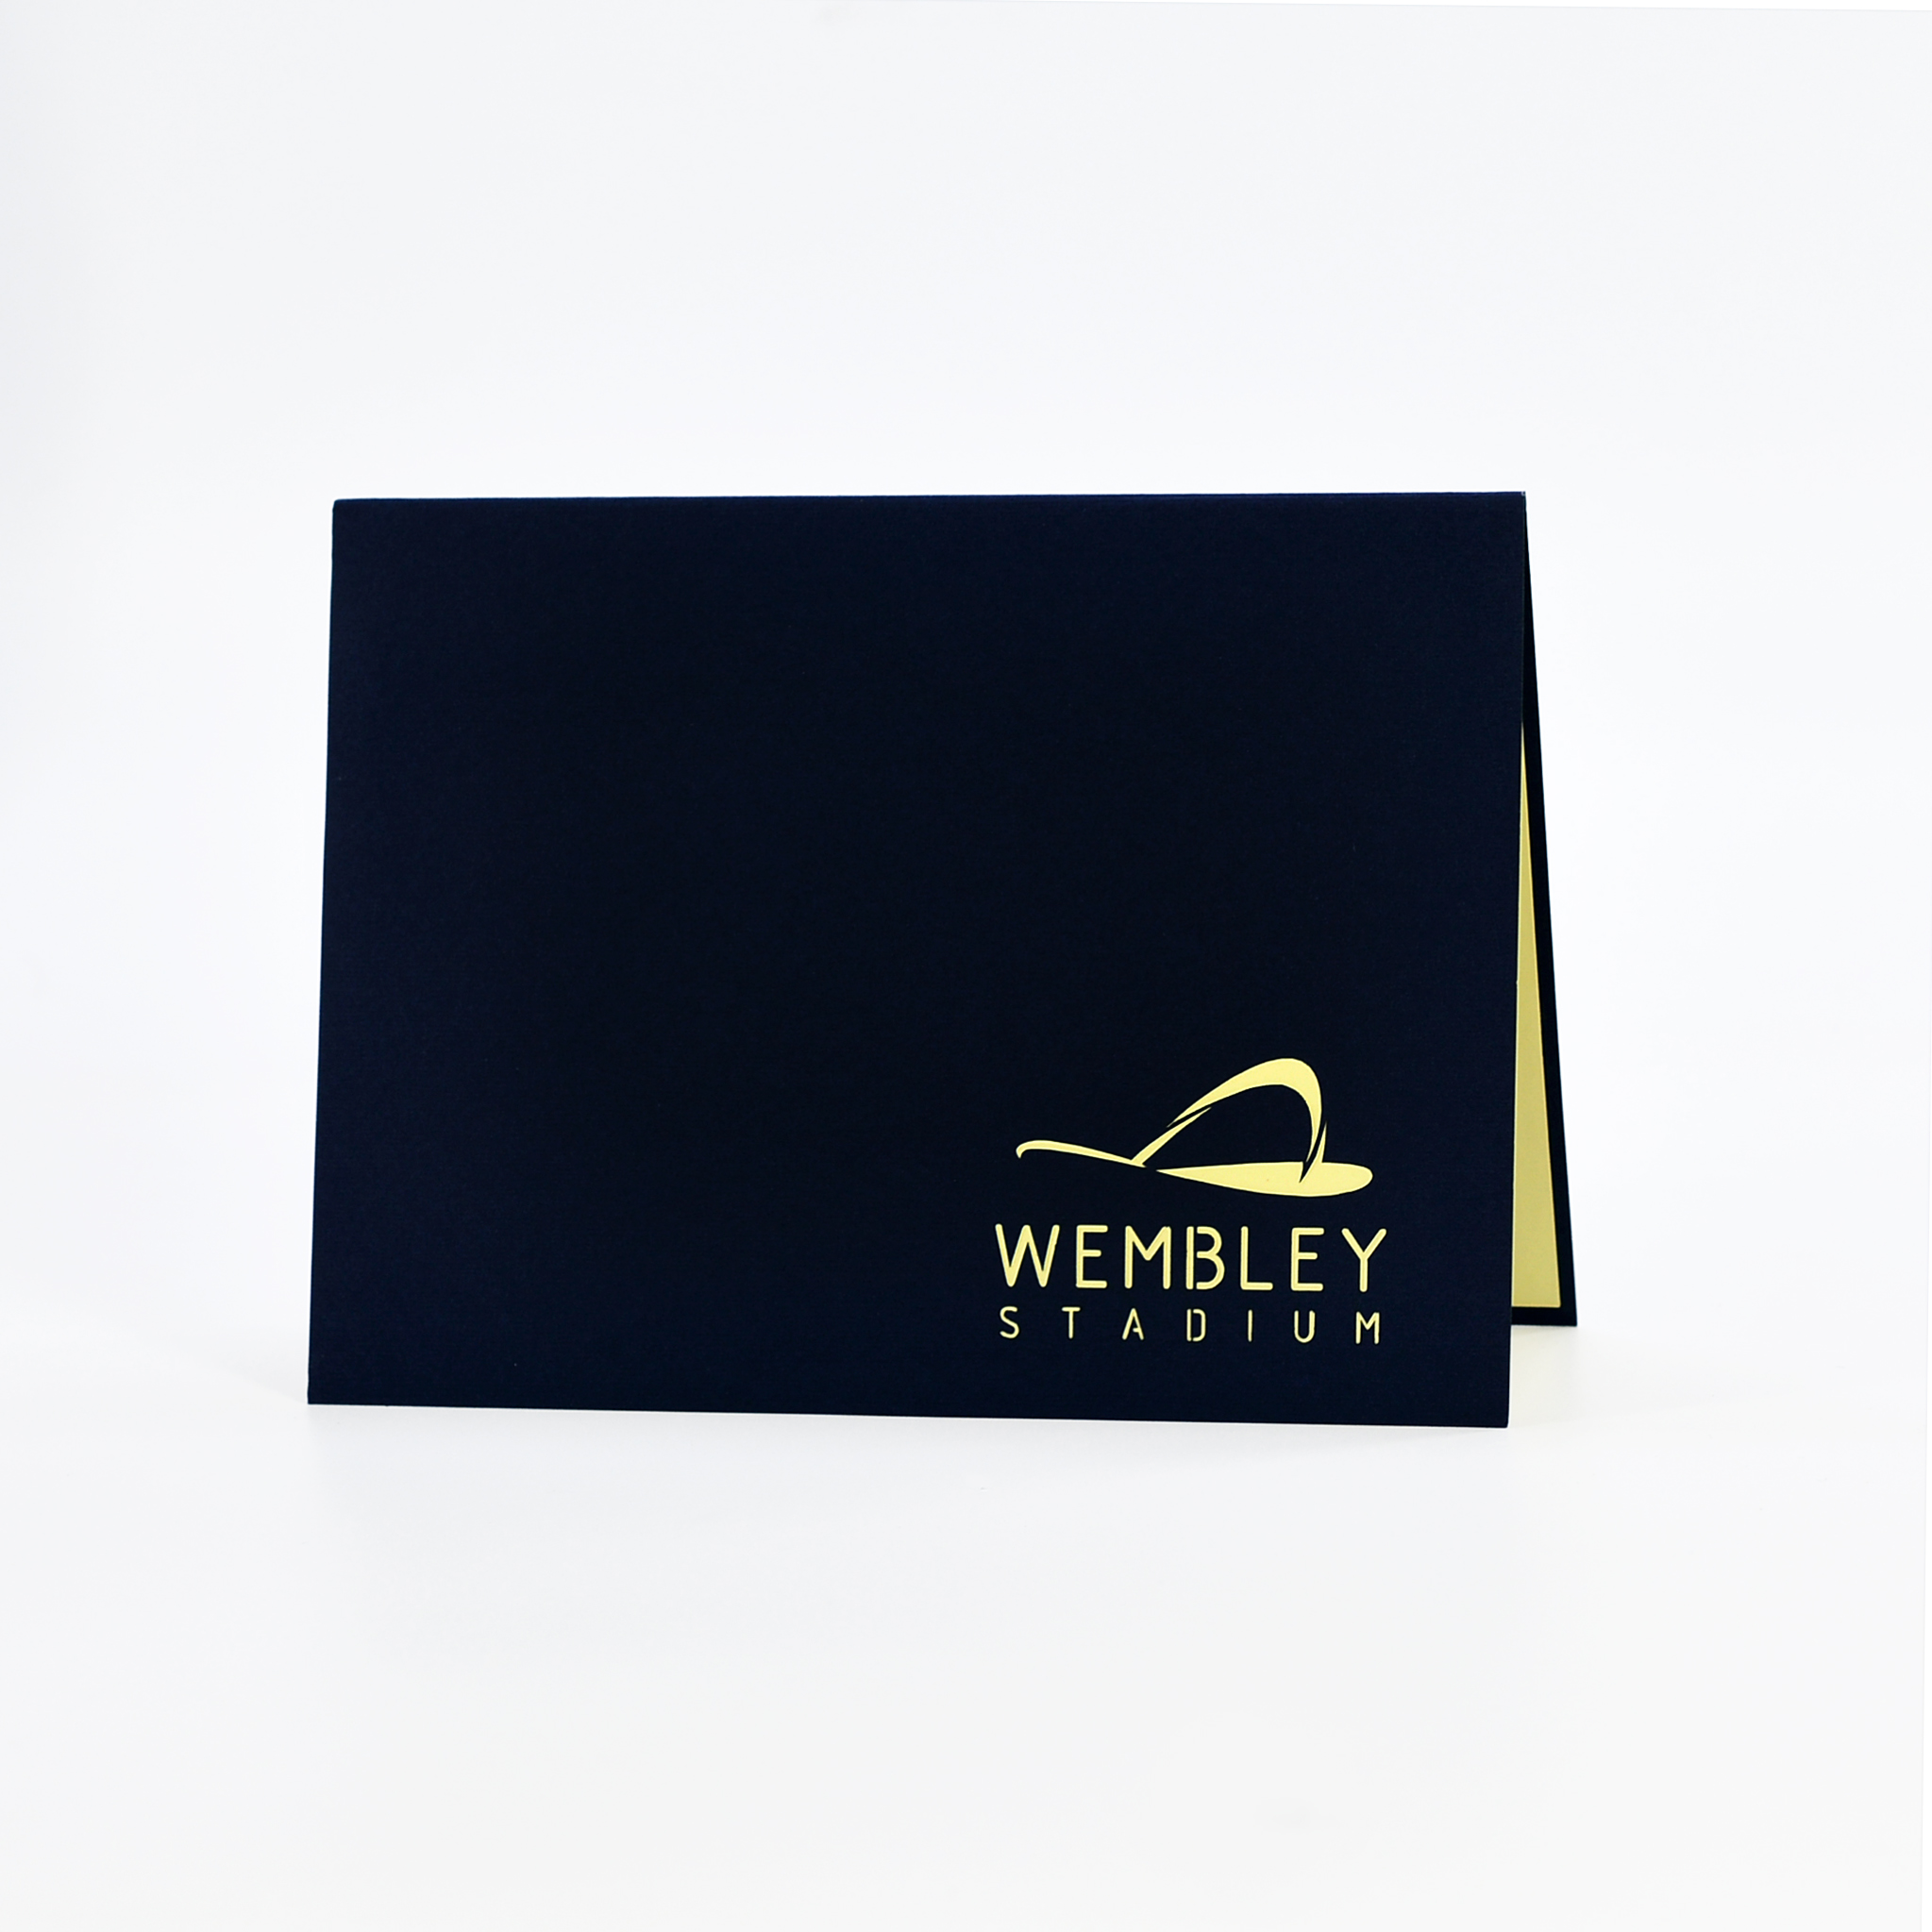 Thiệp nổi 3D Sân vận động Wembley của Anh, kết cấu chặt chẽ, cắt laser chuẩn xác, sắc nét, Size 15x20cm ST009